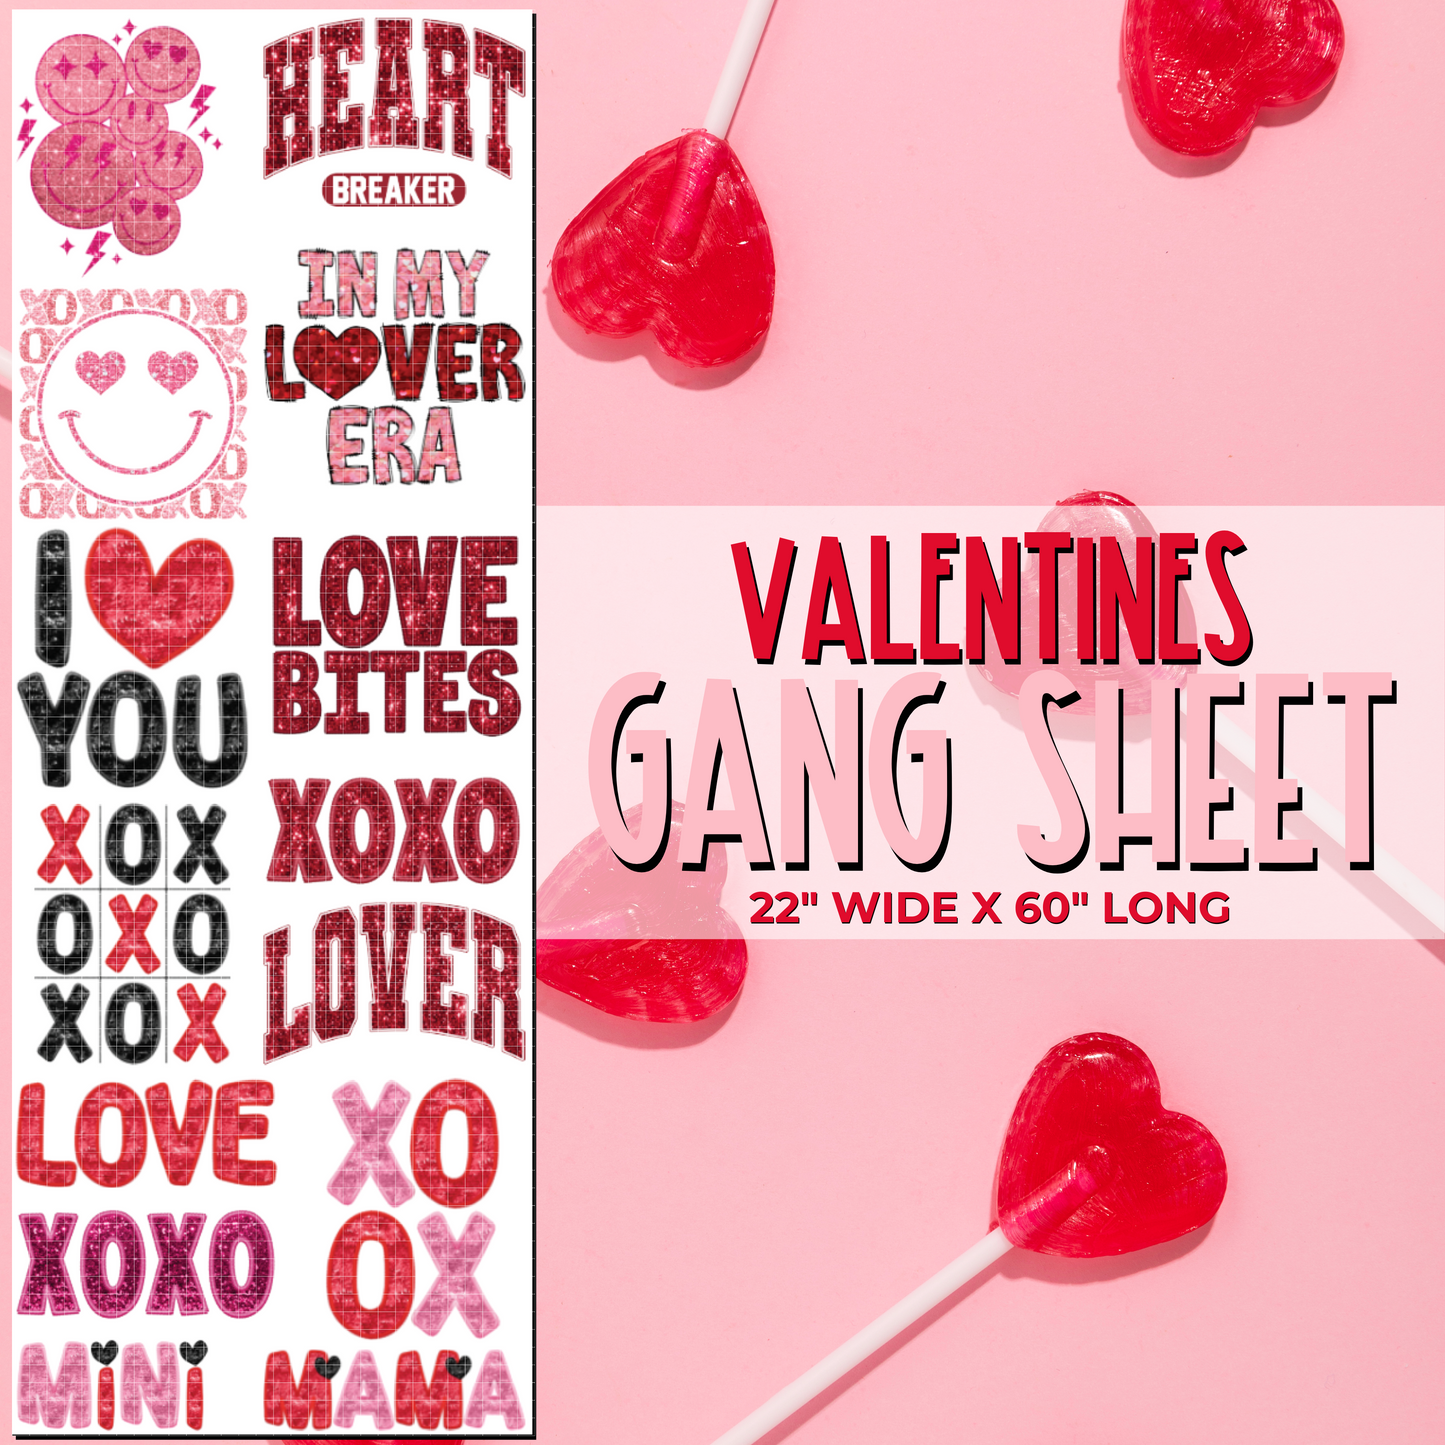 Valentines DTF Gang Sheet